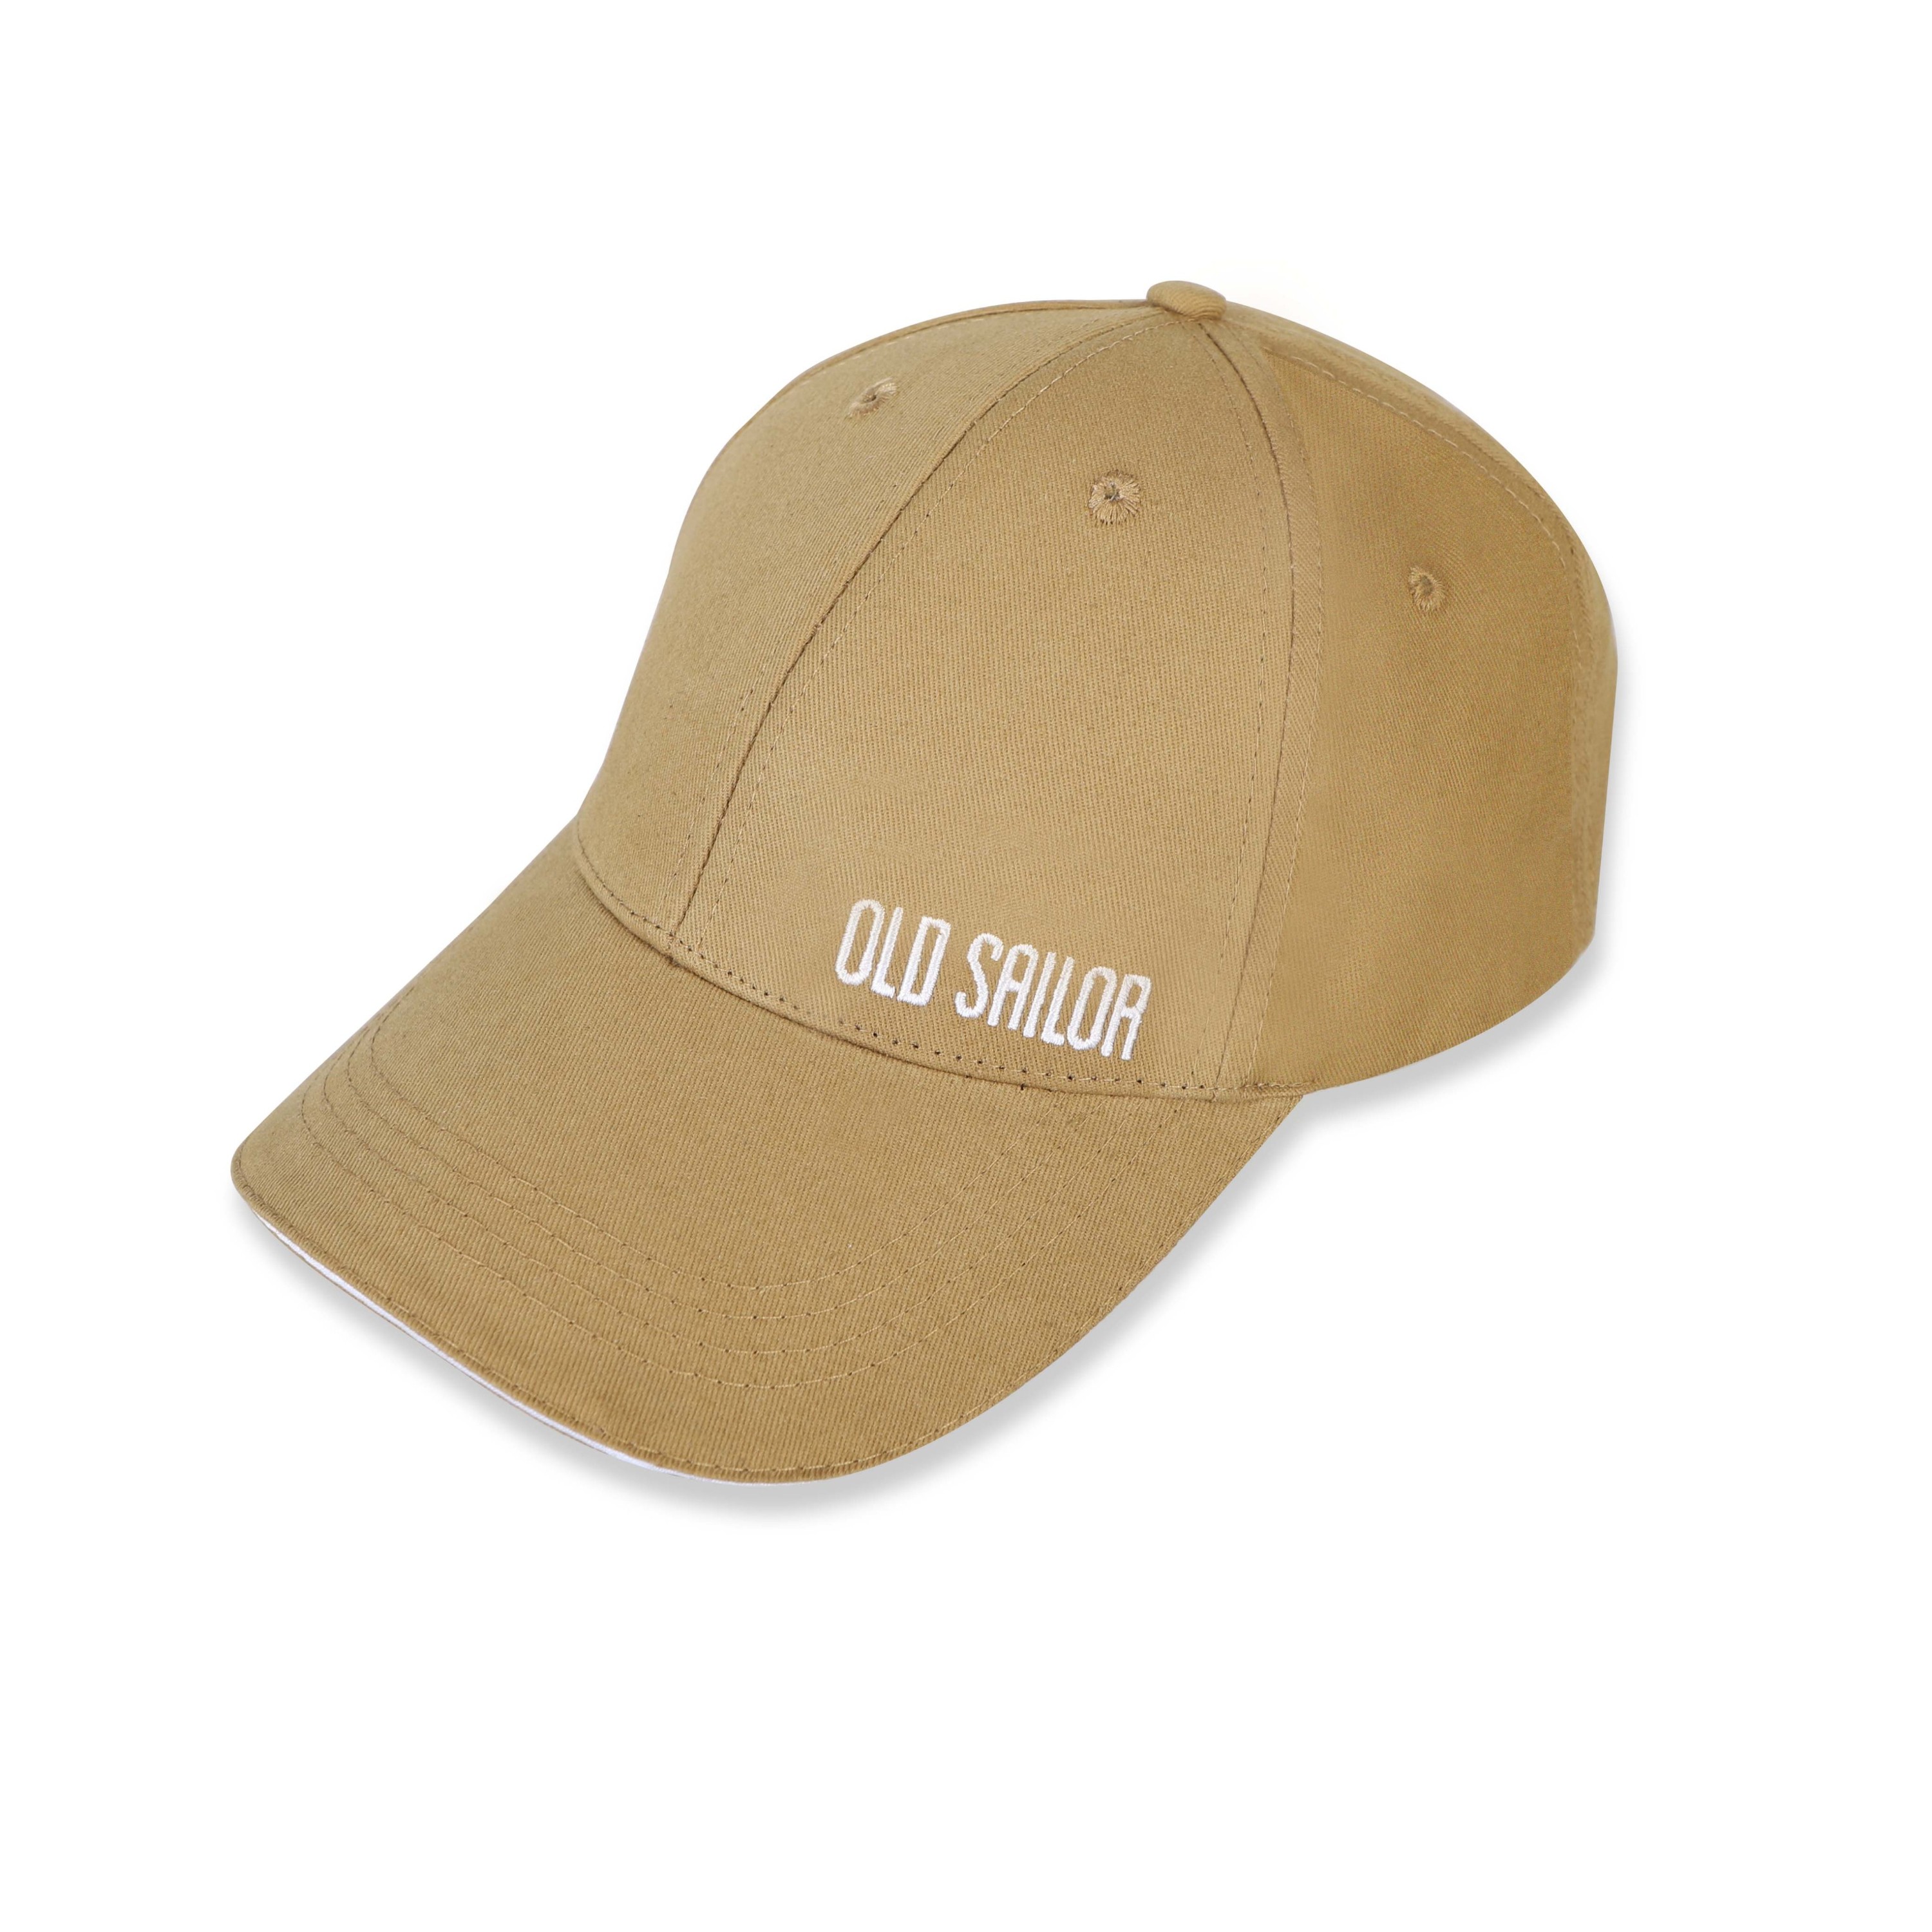 Nón thêu họa tiết Old Sailor - O.S.L BALL CAP - BEIGE - NOBT26007 - be viền trắng